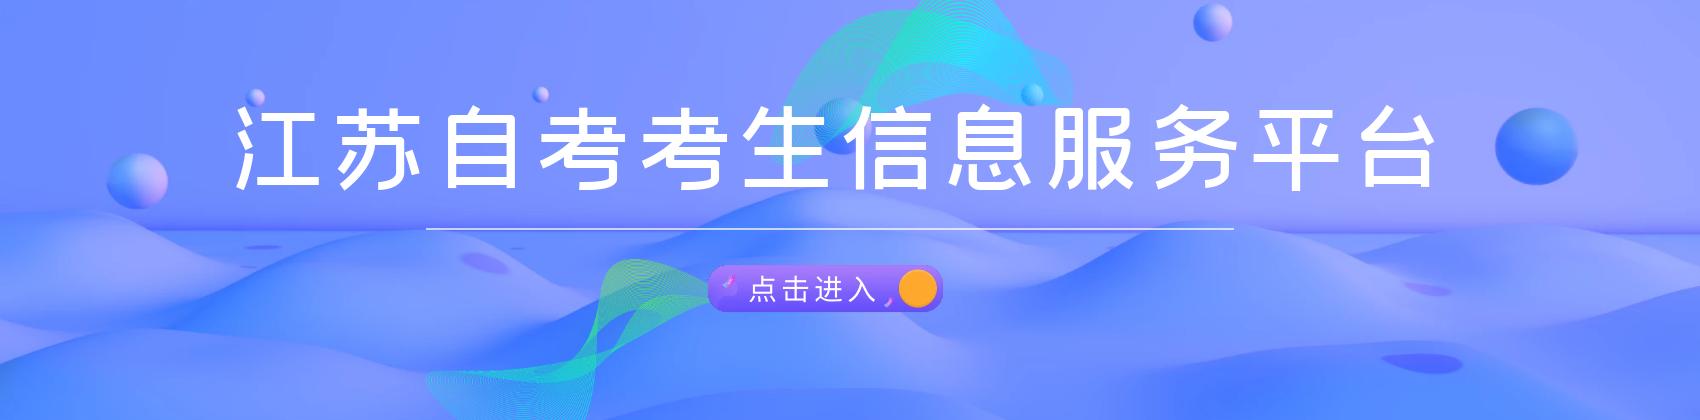 江苏自考考生信息服务平台